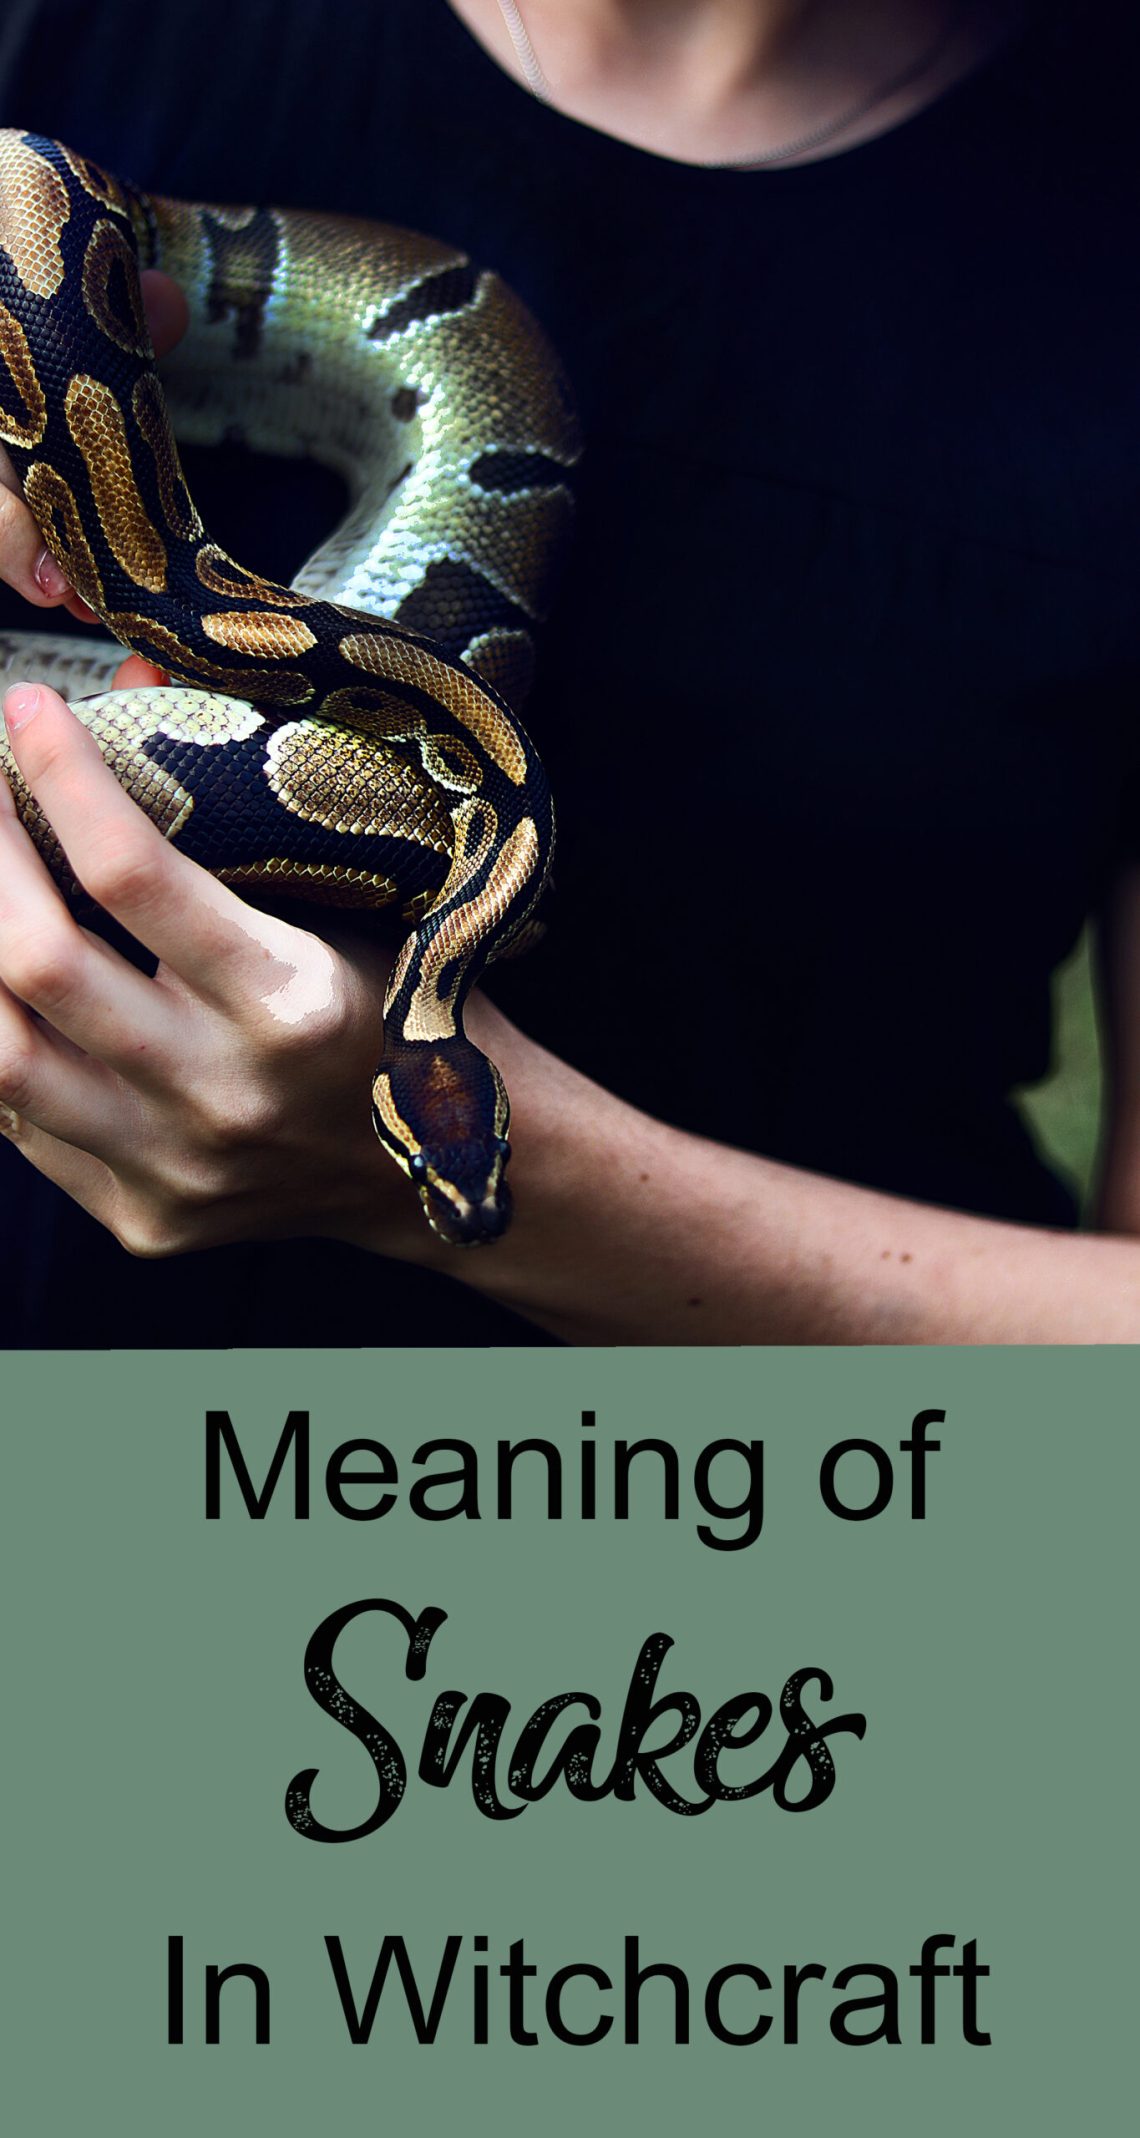 Serpiente y hechicera: significado de las serpientes en la brujería